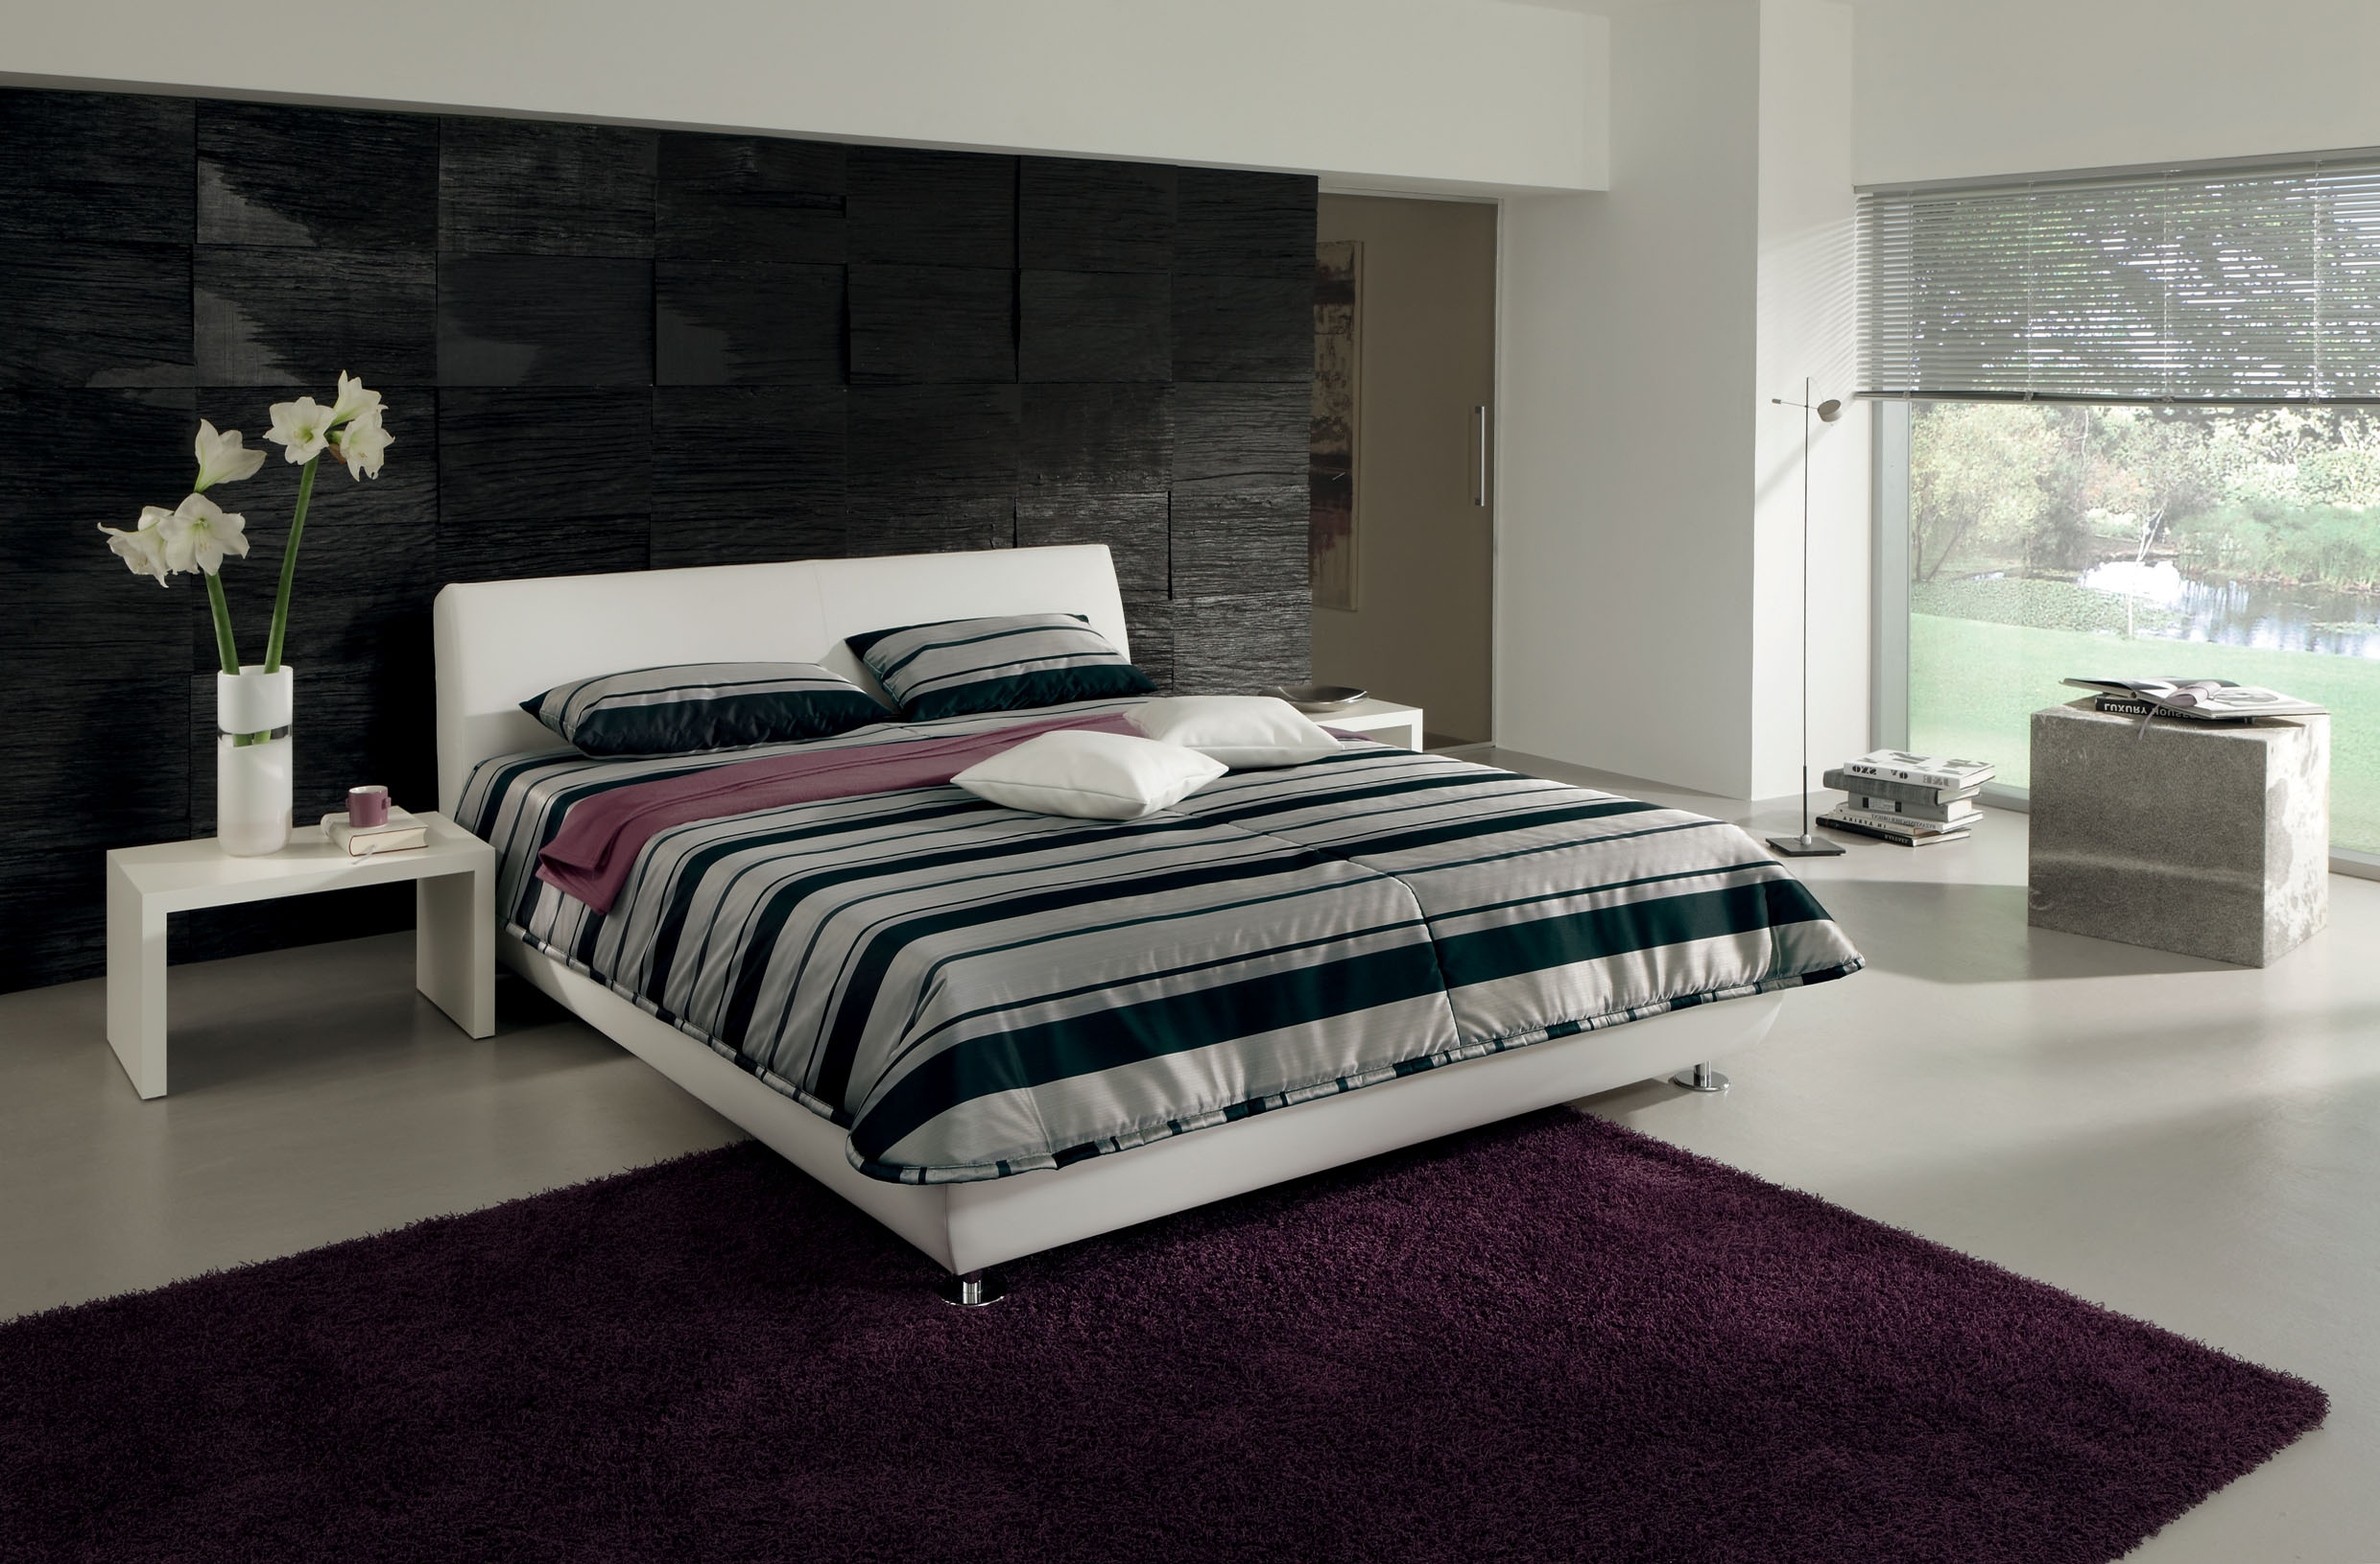 Luxusní kožené postele Nicola znaèky RUF Betten